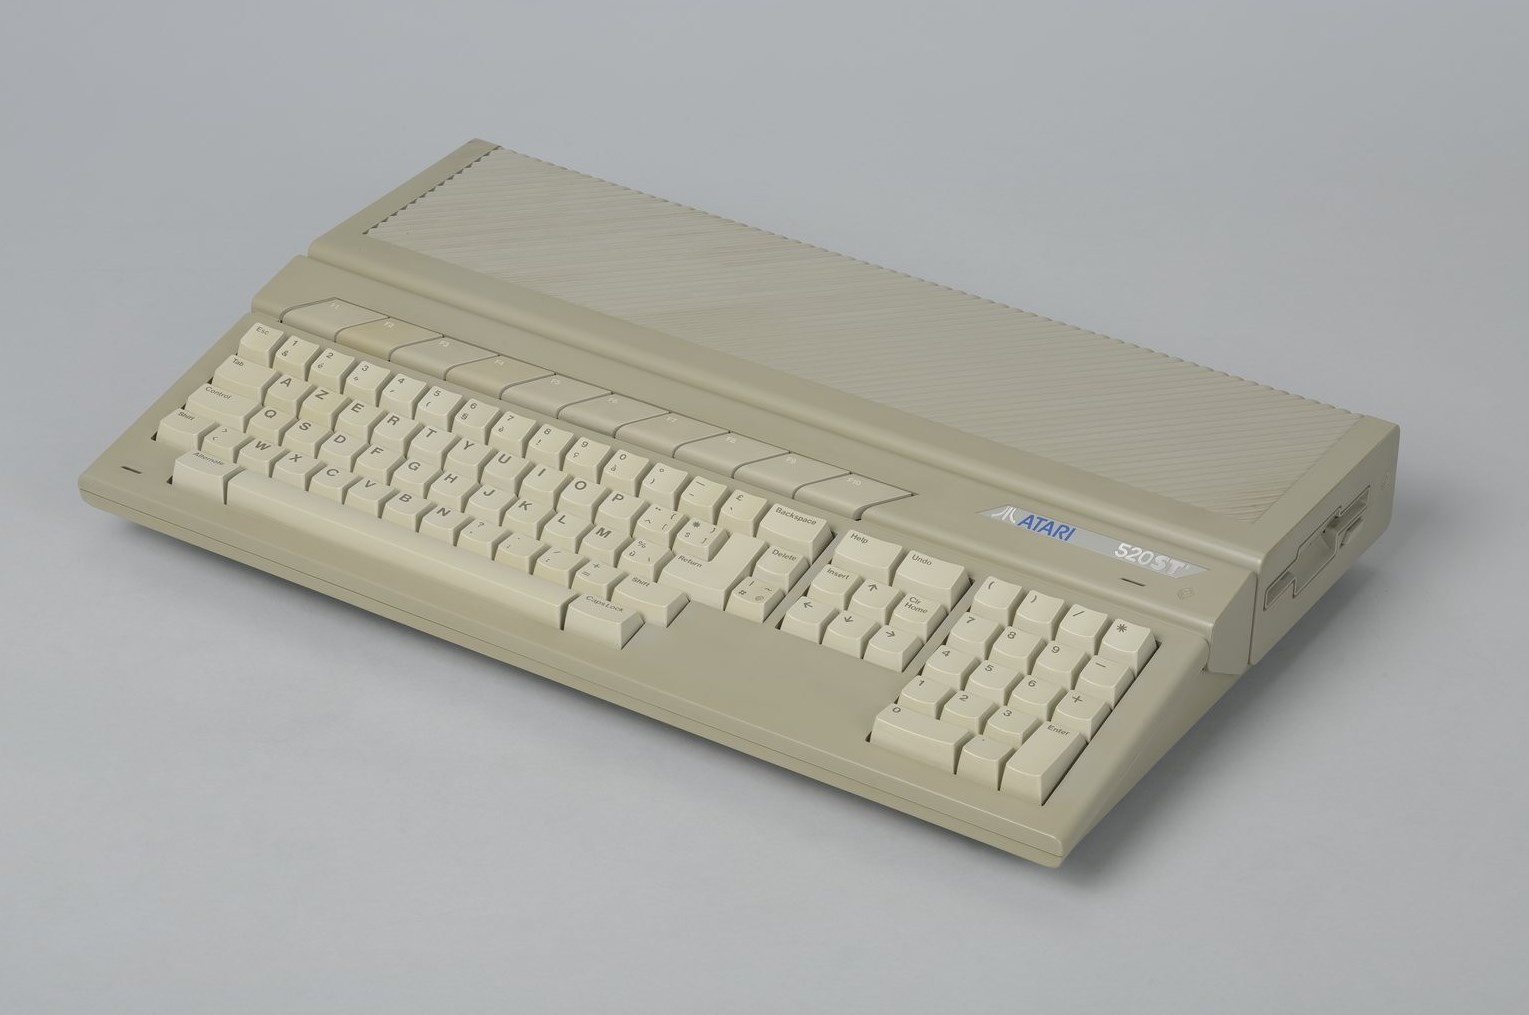 Accéder à la page "Atari 520 ST"